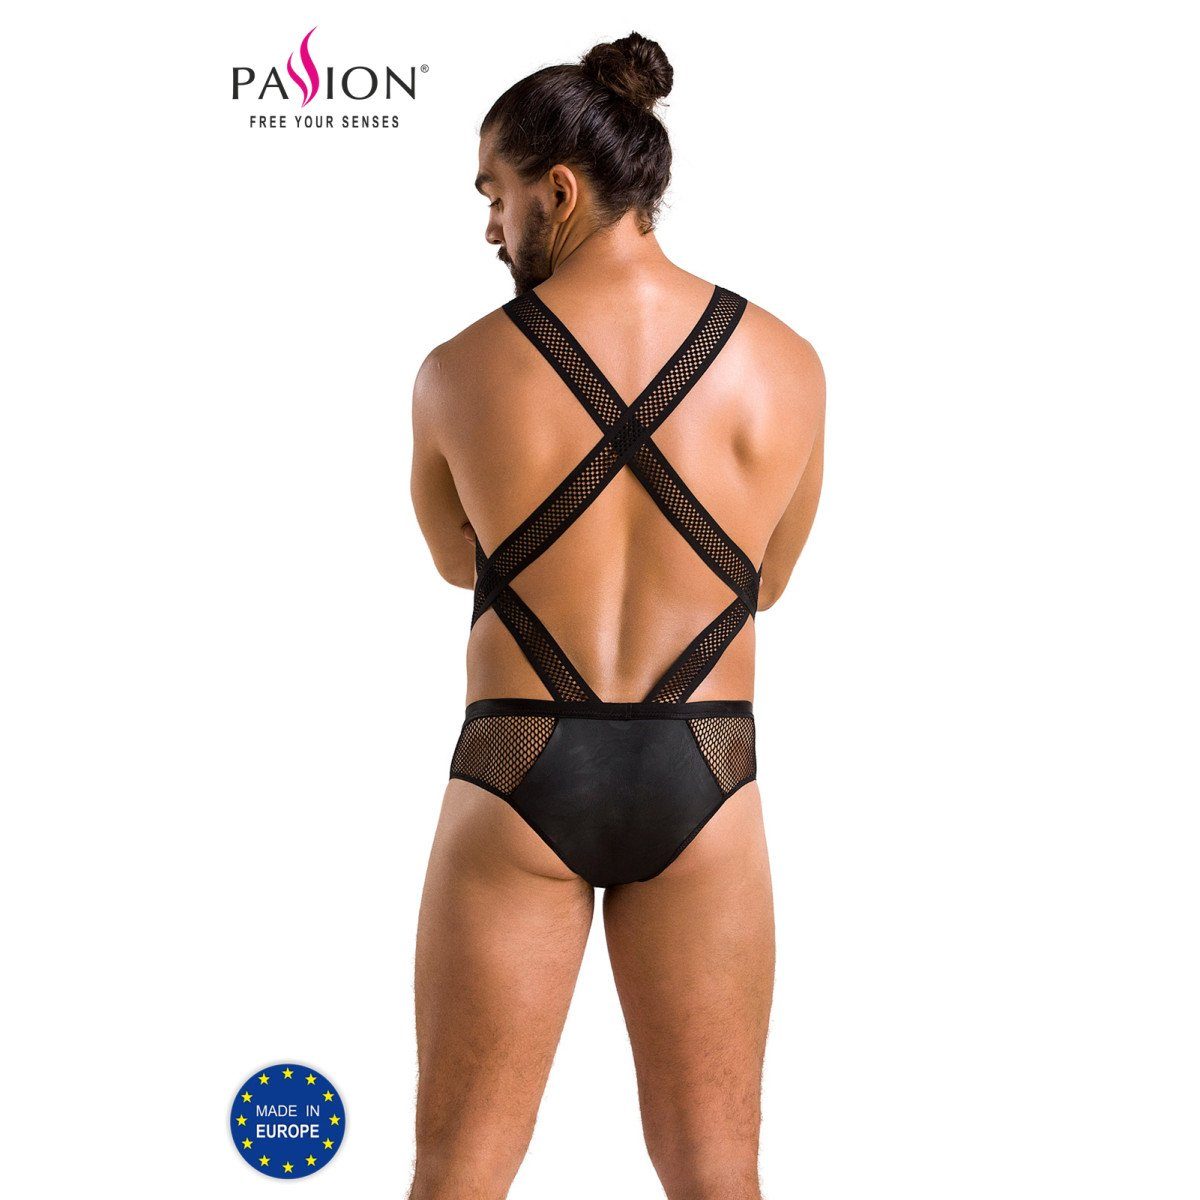 Passion Menswear Body PM VICTOR black (L/XL,S/M,XXL) - 045 body